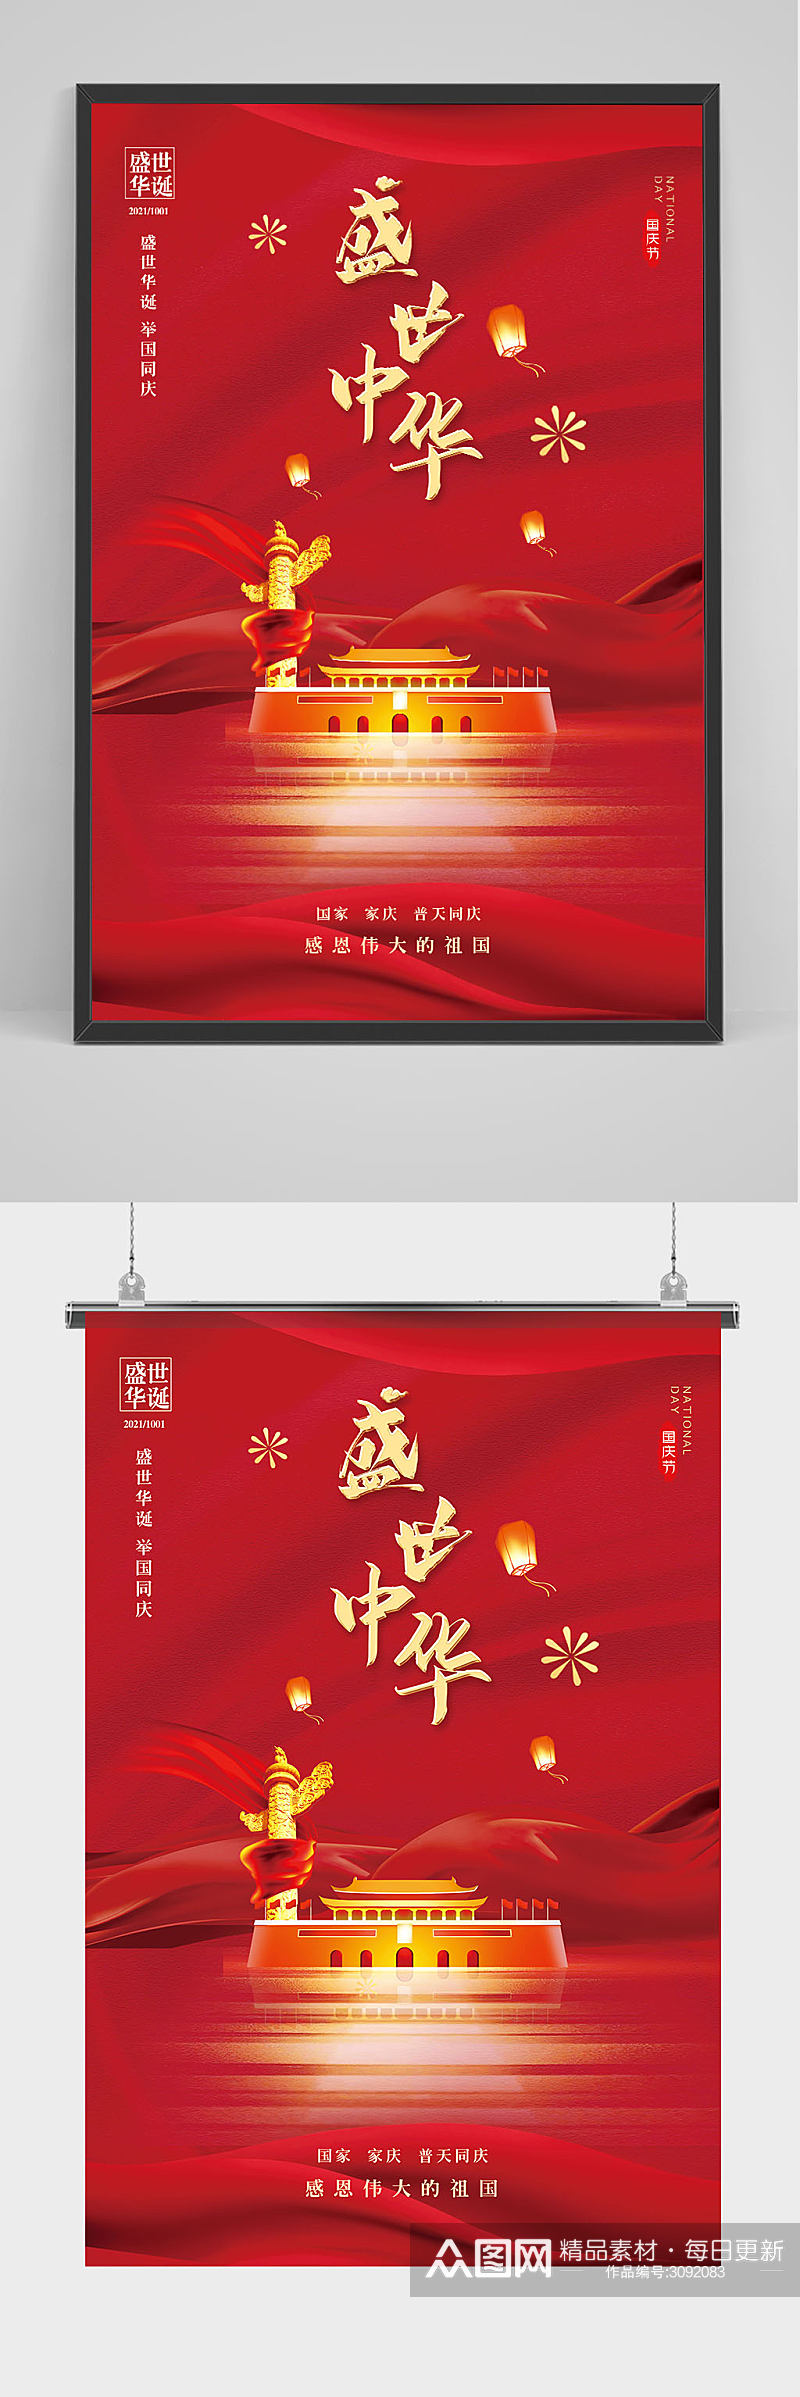 庆祝国庆节红色大气海报素材